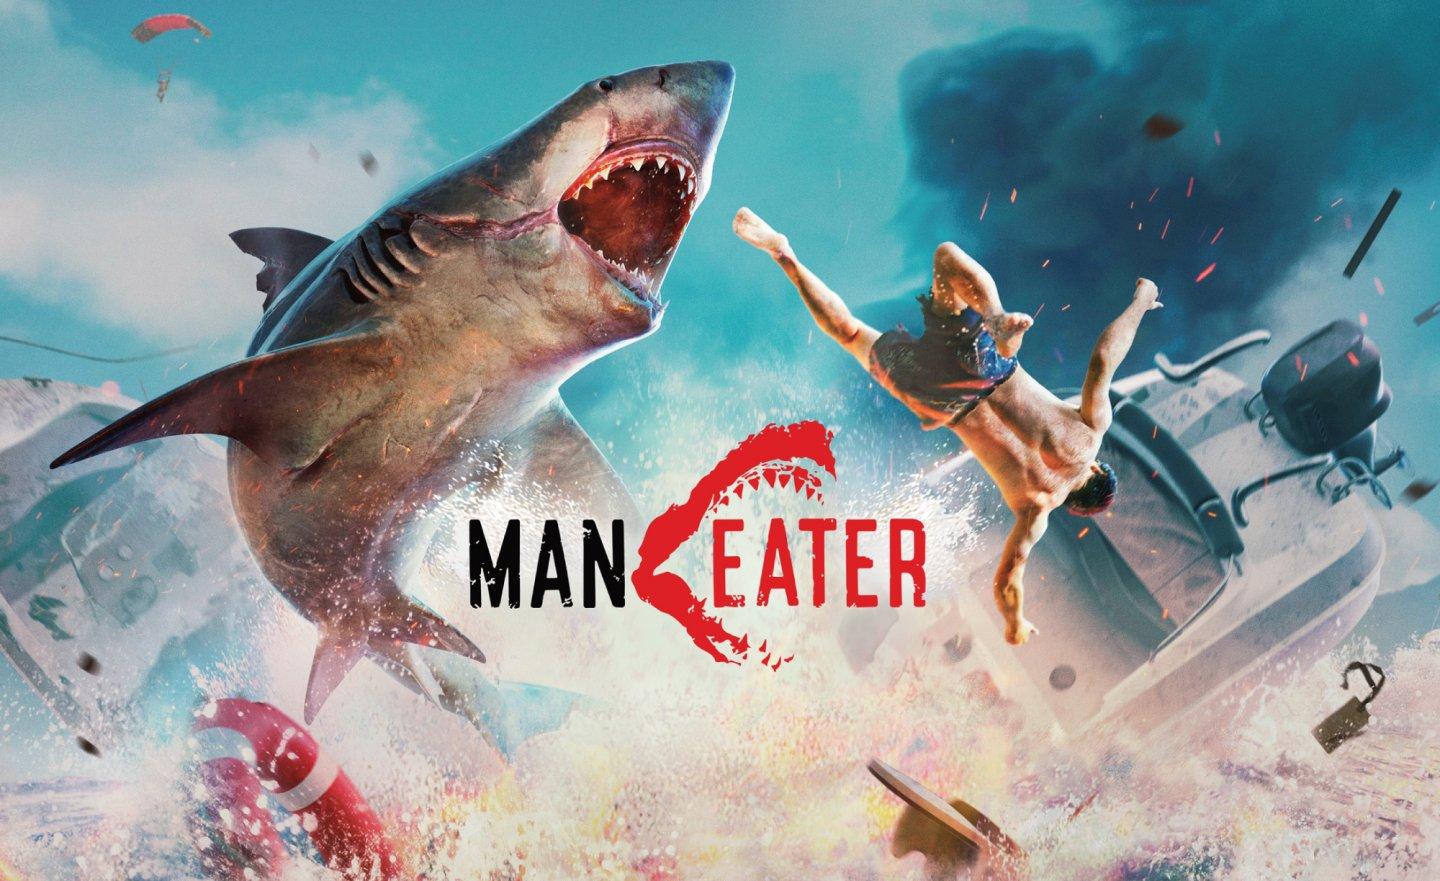 【限時免費】變身成可怕的《Maneater 食人鯊》體驗掠食者心態吧！遊戲放送至 2022 年 6 月 16 日 23:00 前領取